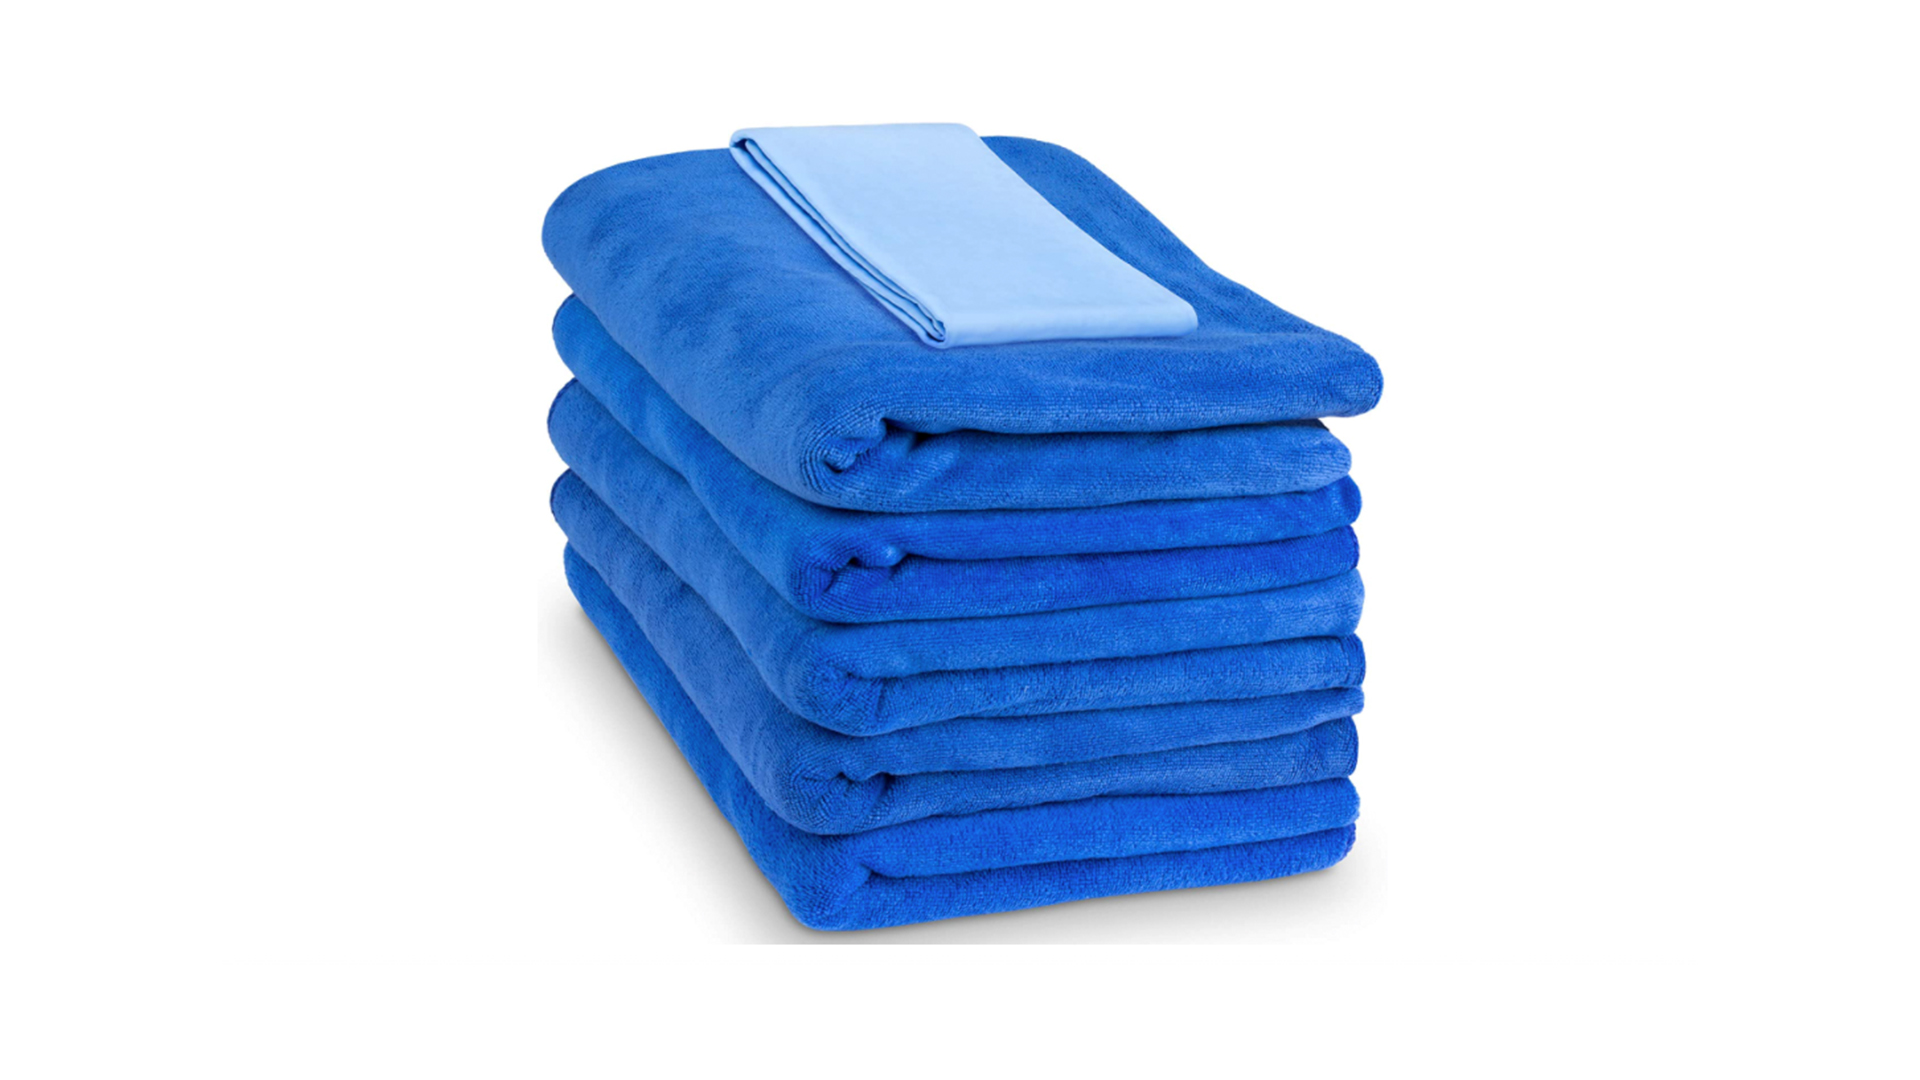 Mighty Cleaner Premium Shammy Towel + Storage Case - 26x17